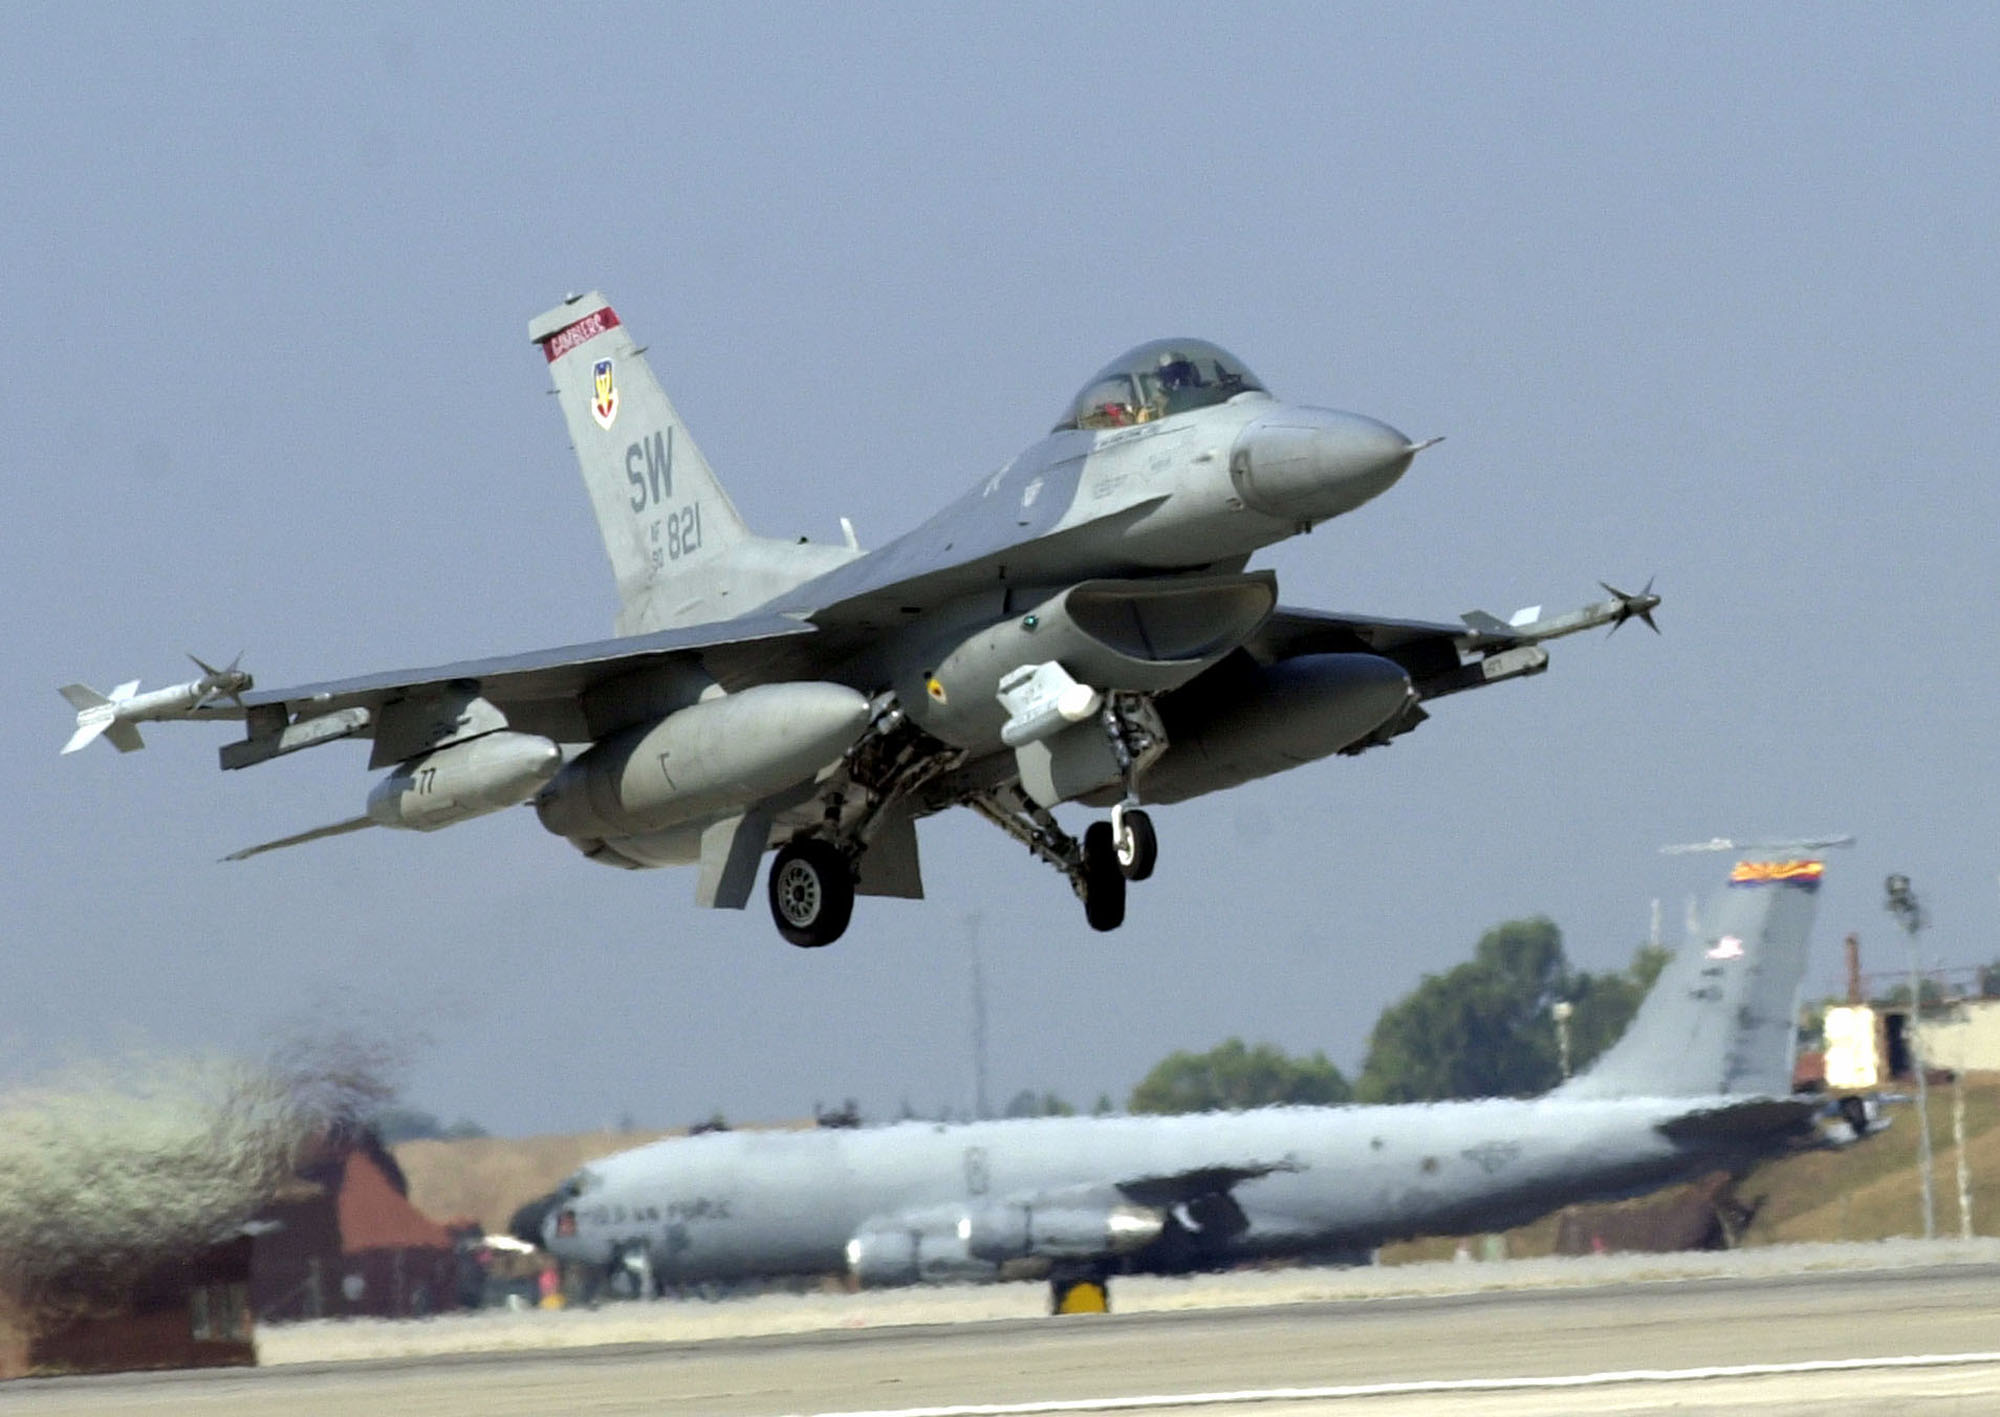 A U.S. F-16, F16 fighter jet